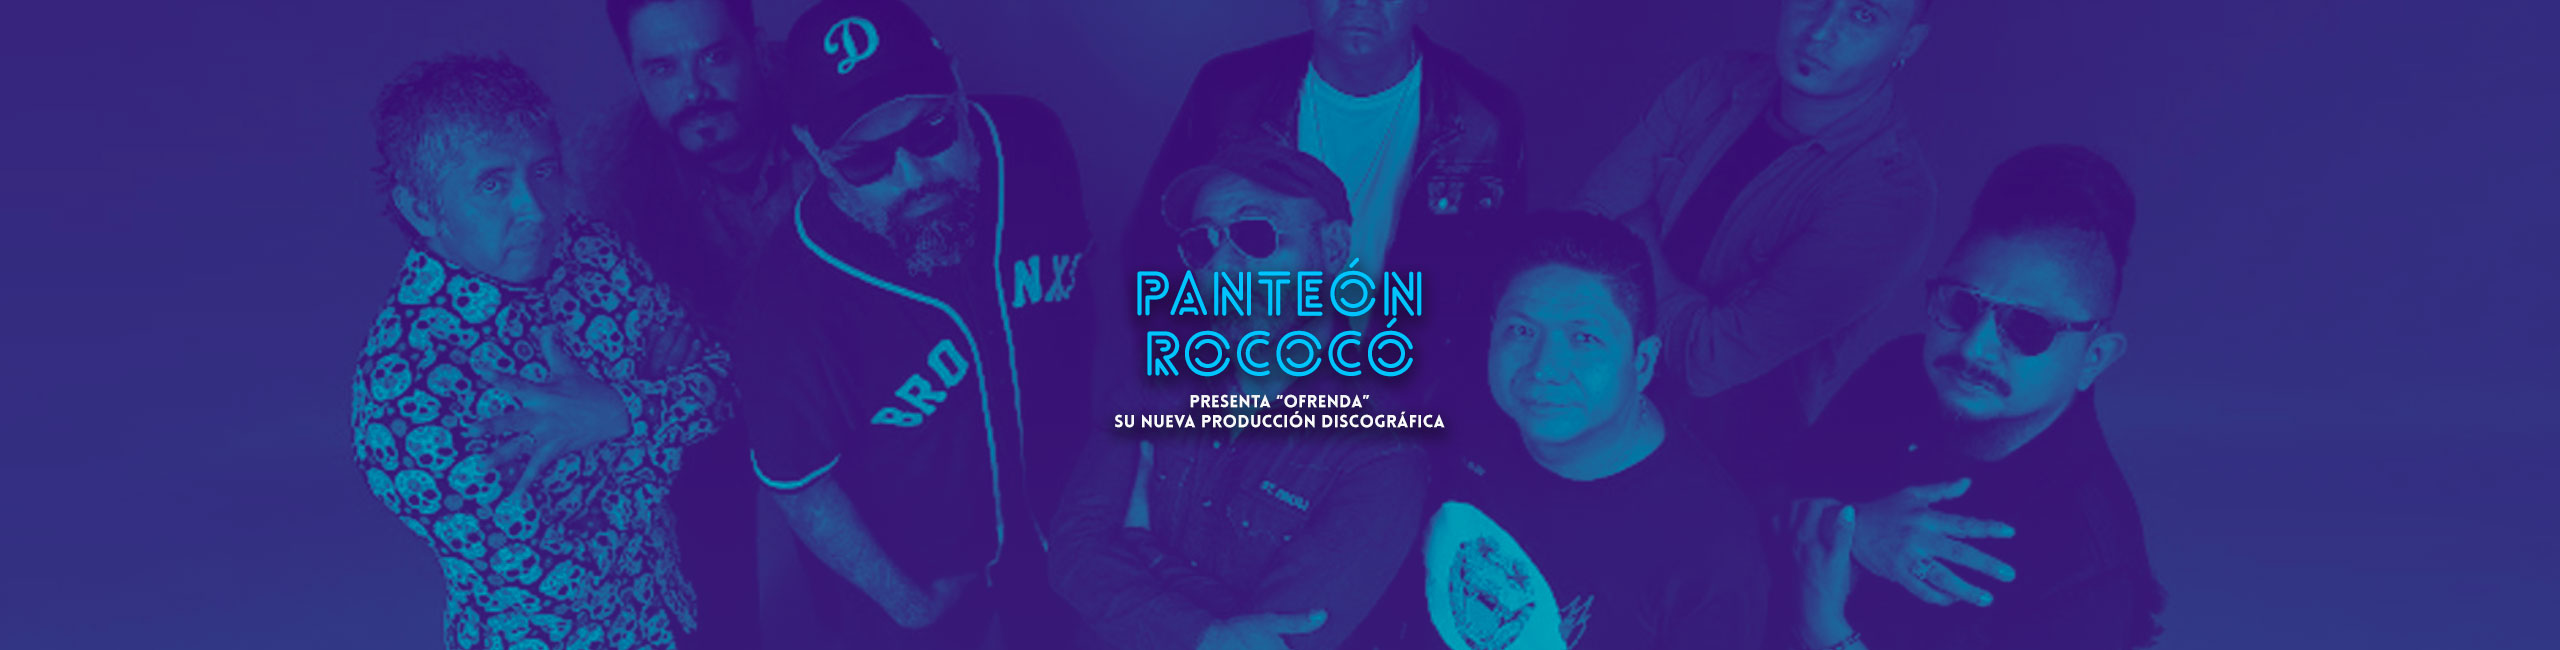 Panteón Rococó: Presenta “Ofrenda” su nueva producción discográfica